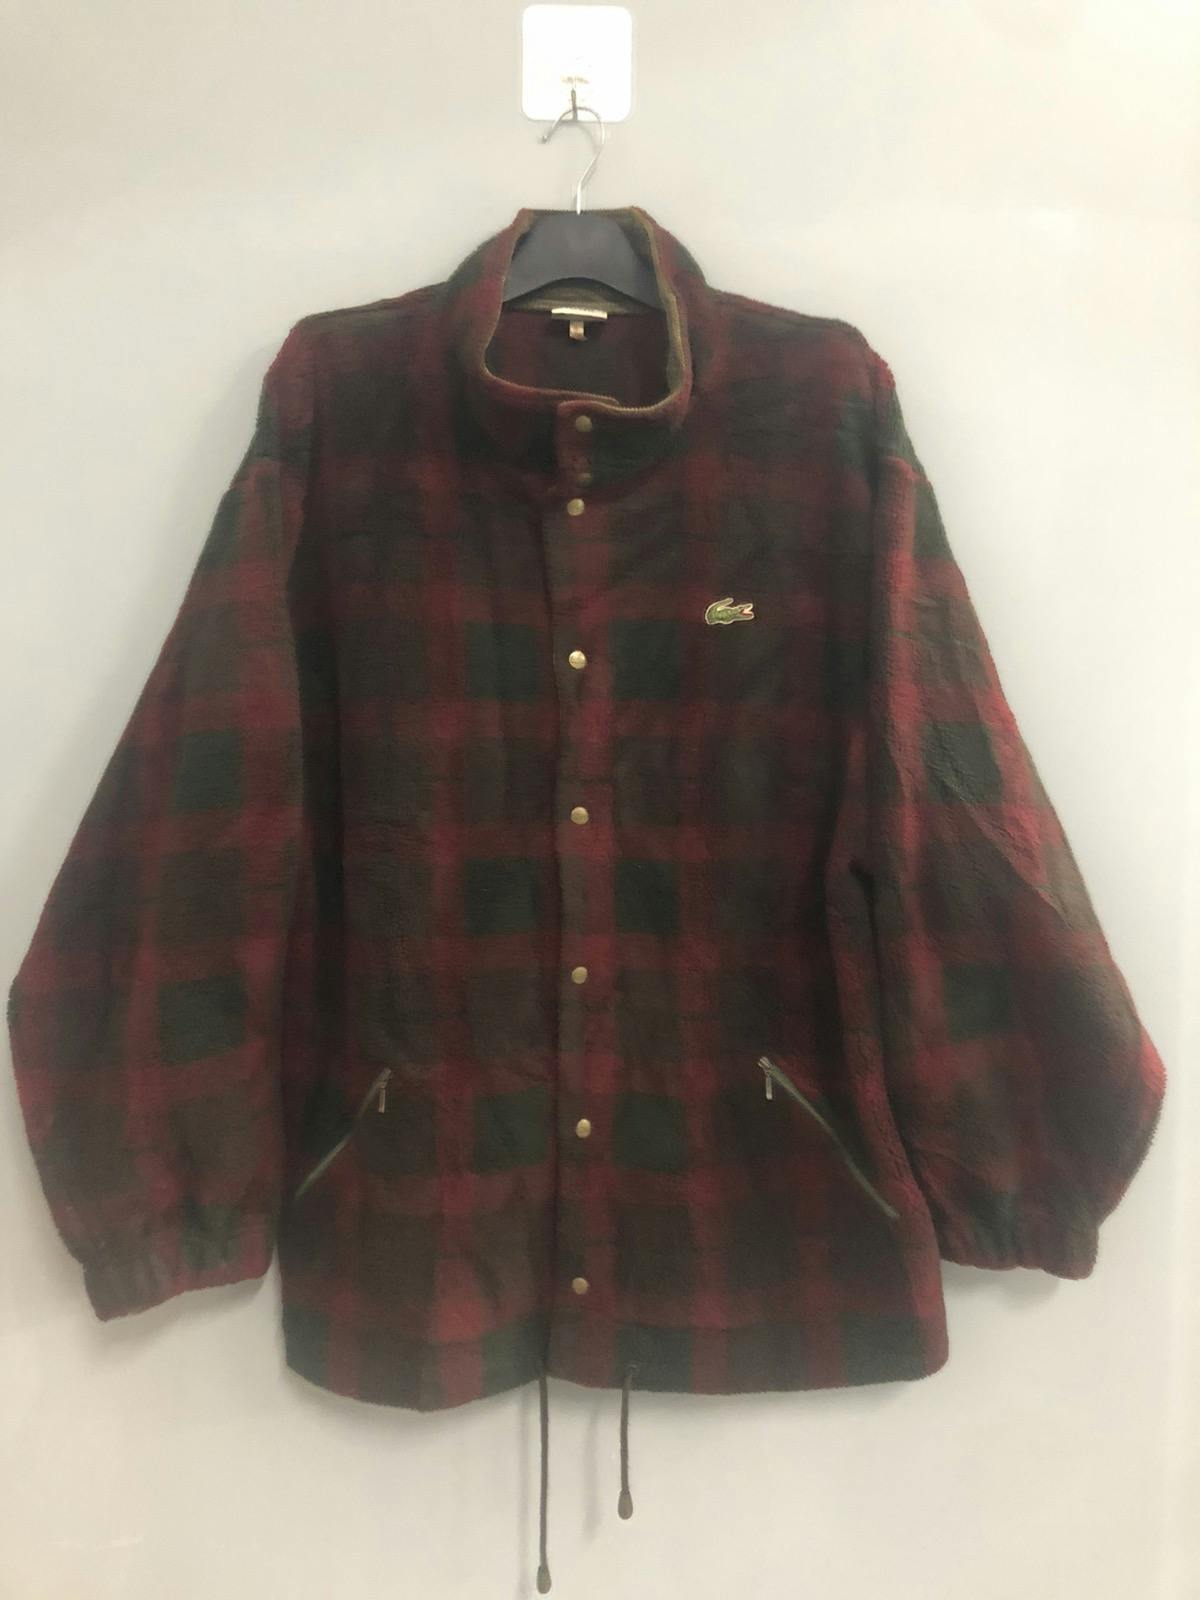 Vintage LACOSTE Fleece Jacket Plaid - 1